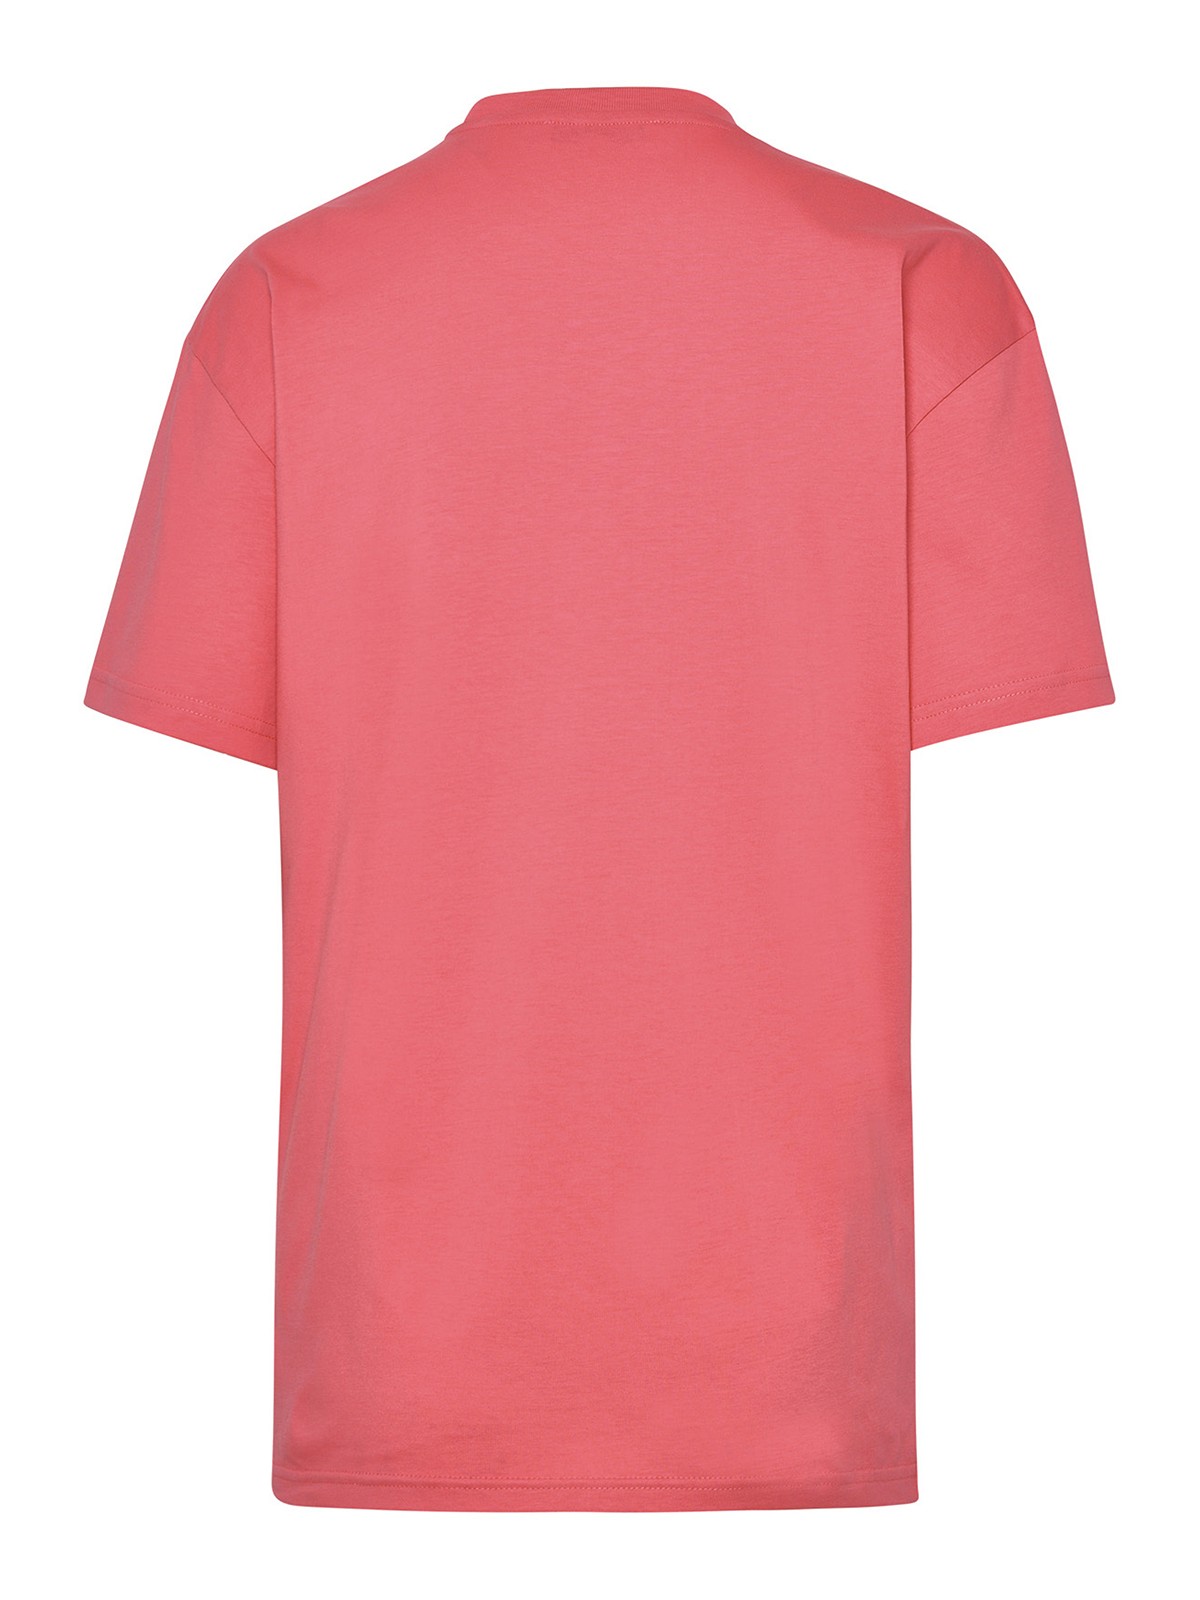 Camisetas J.W. Anderson - Camiseta - Color Carne Y Neutral - JT0185PG0772300